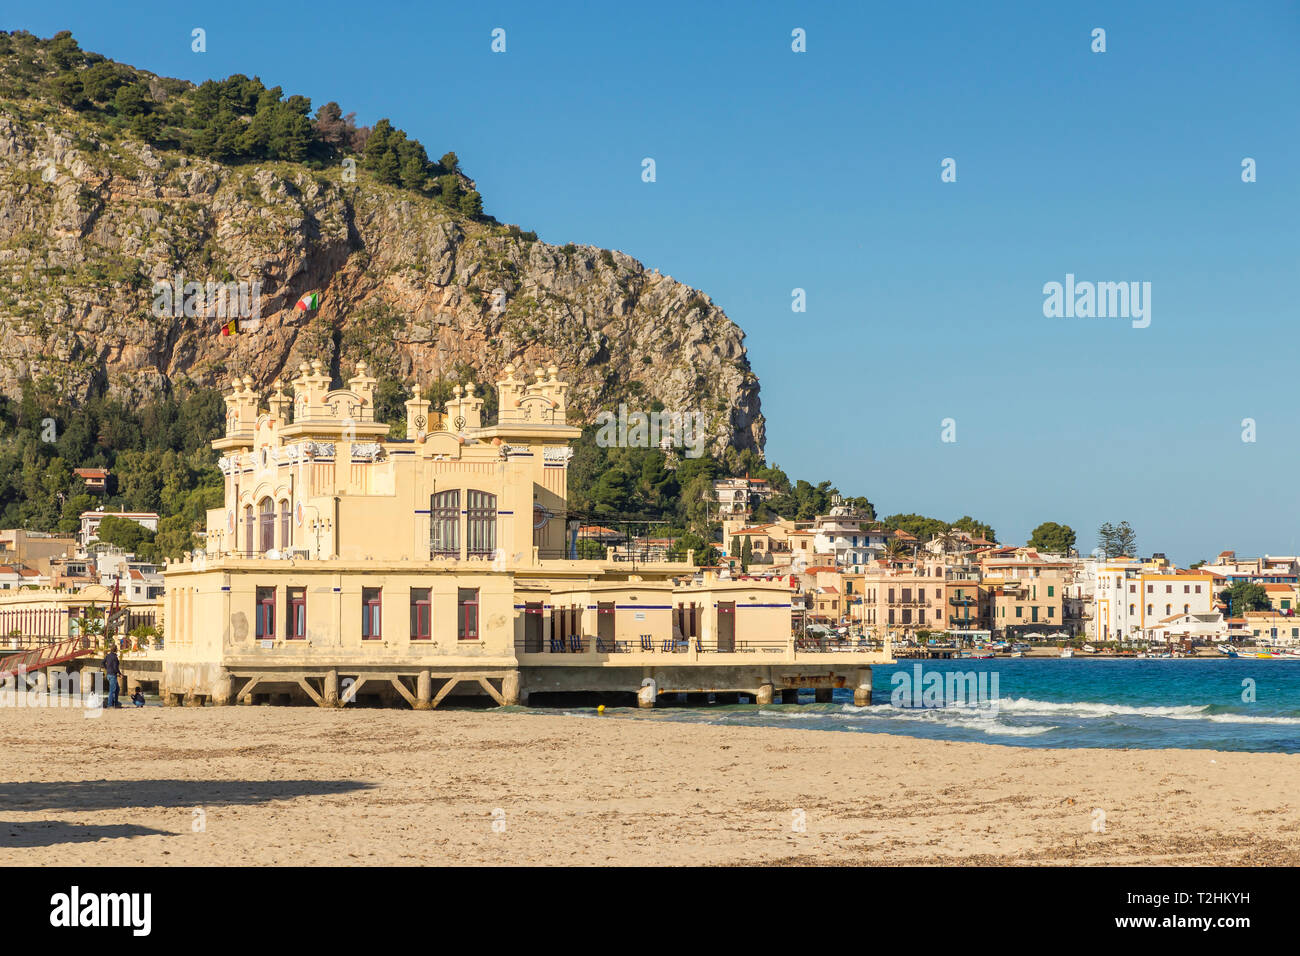 Das Antico Stabilimento Balneare Gebäude (auch als 'Charleston') von Mondello Borough, Palermo, Sizilien, Italien, Europa bekannt Stockfoto